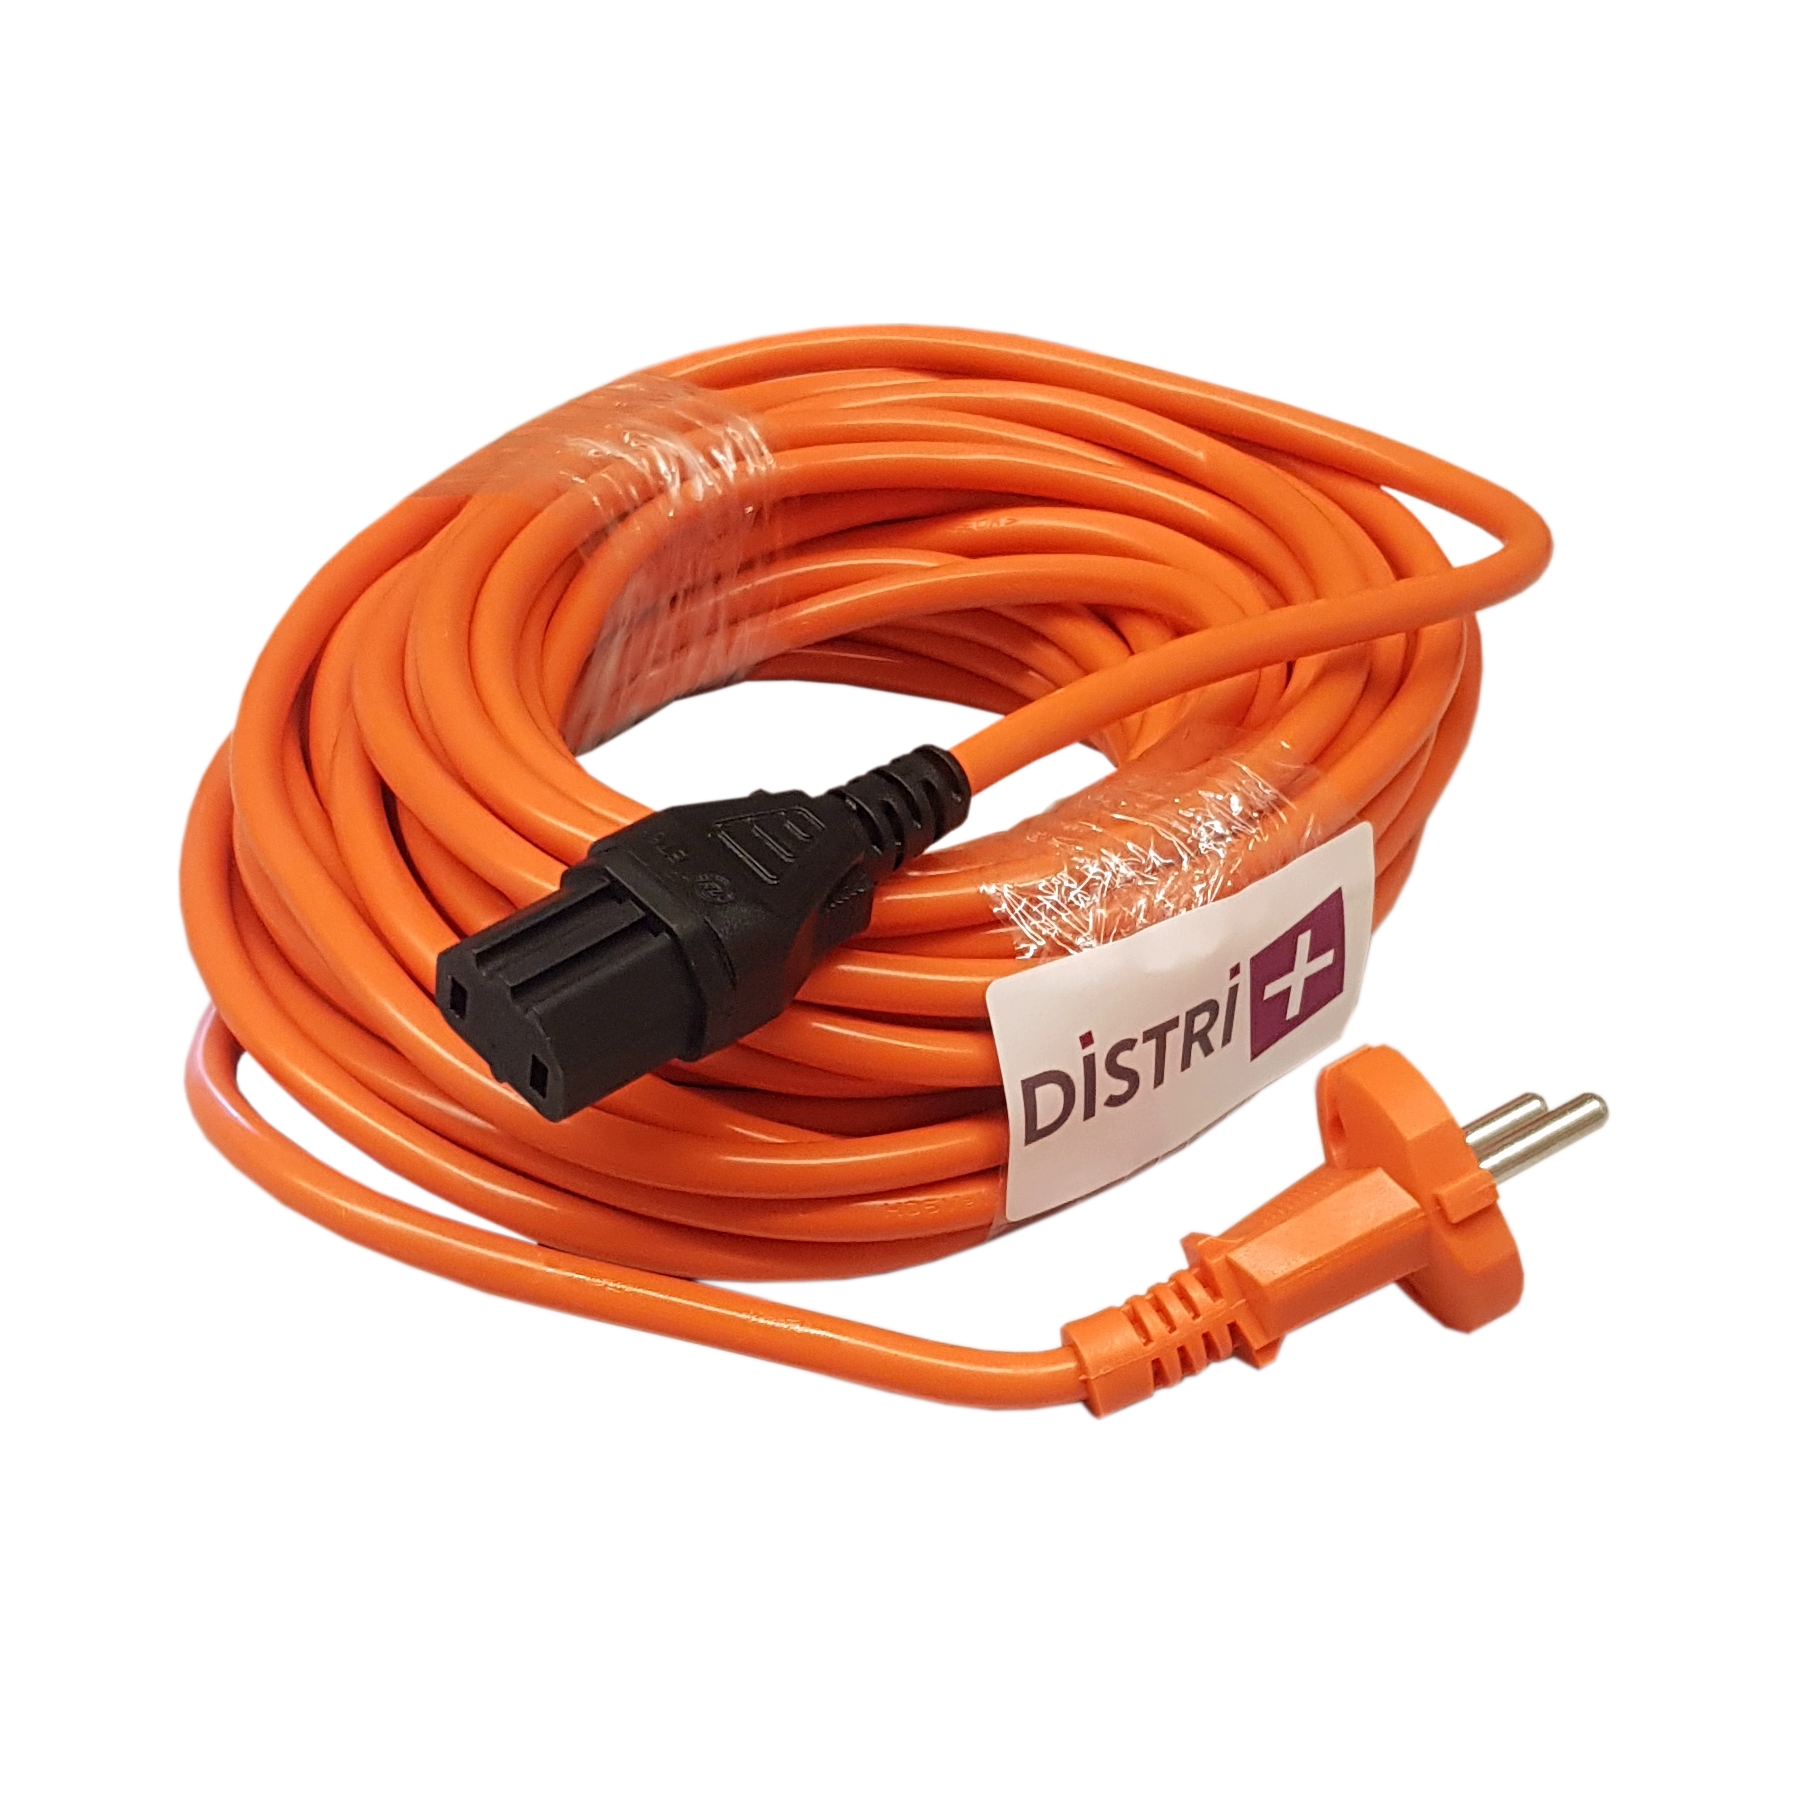 Câble d'alimentation compatible pour aspirateur NUMATIC RSV150, PPR240, PPR370, PPR380, 236176, 905061... Longueur 12.5m